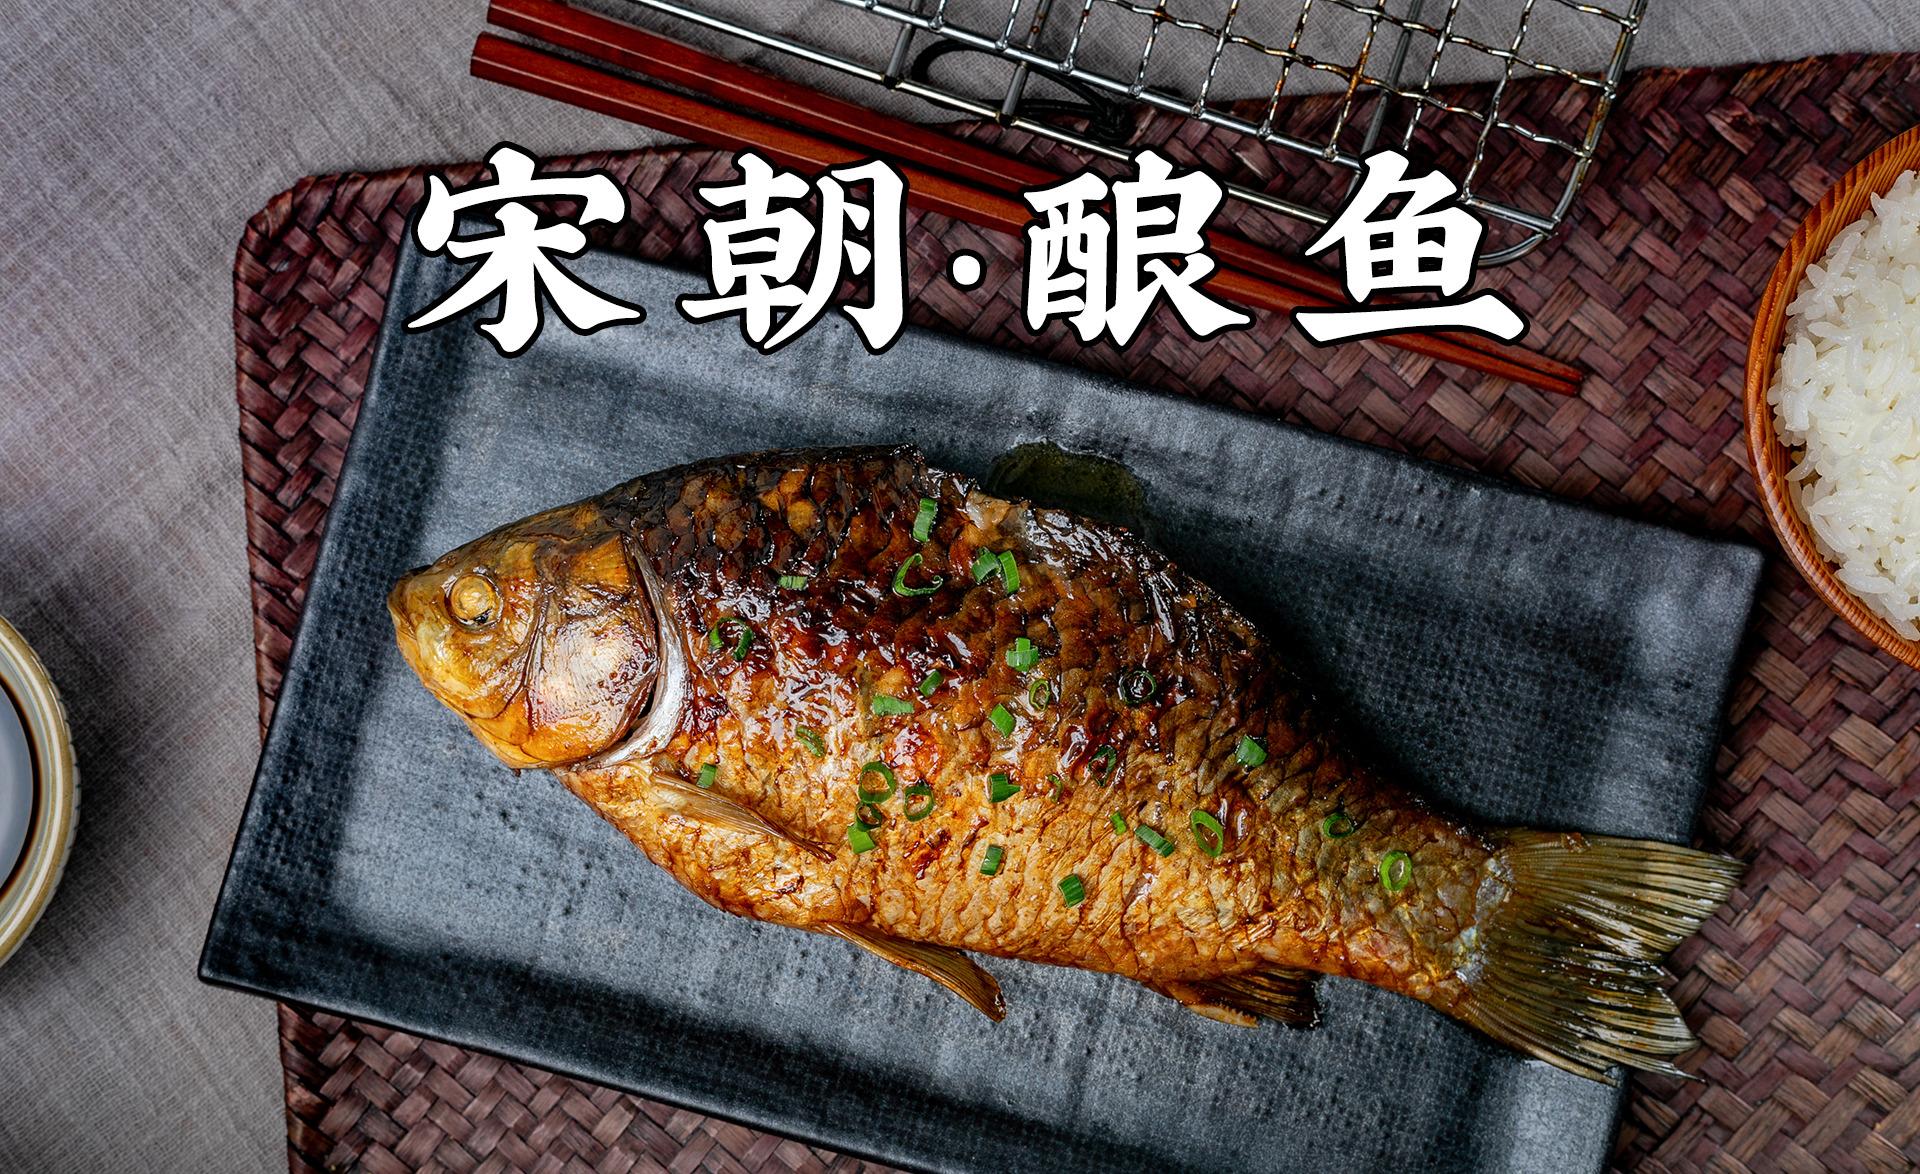 宋朝人民的烤鱼秘方,连厨师都忍不住狂咽口水